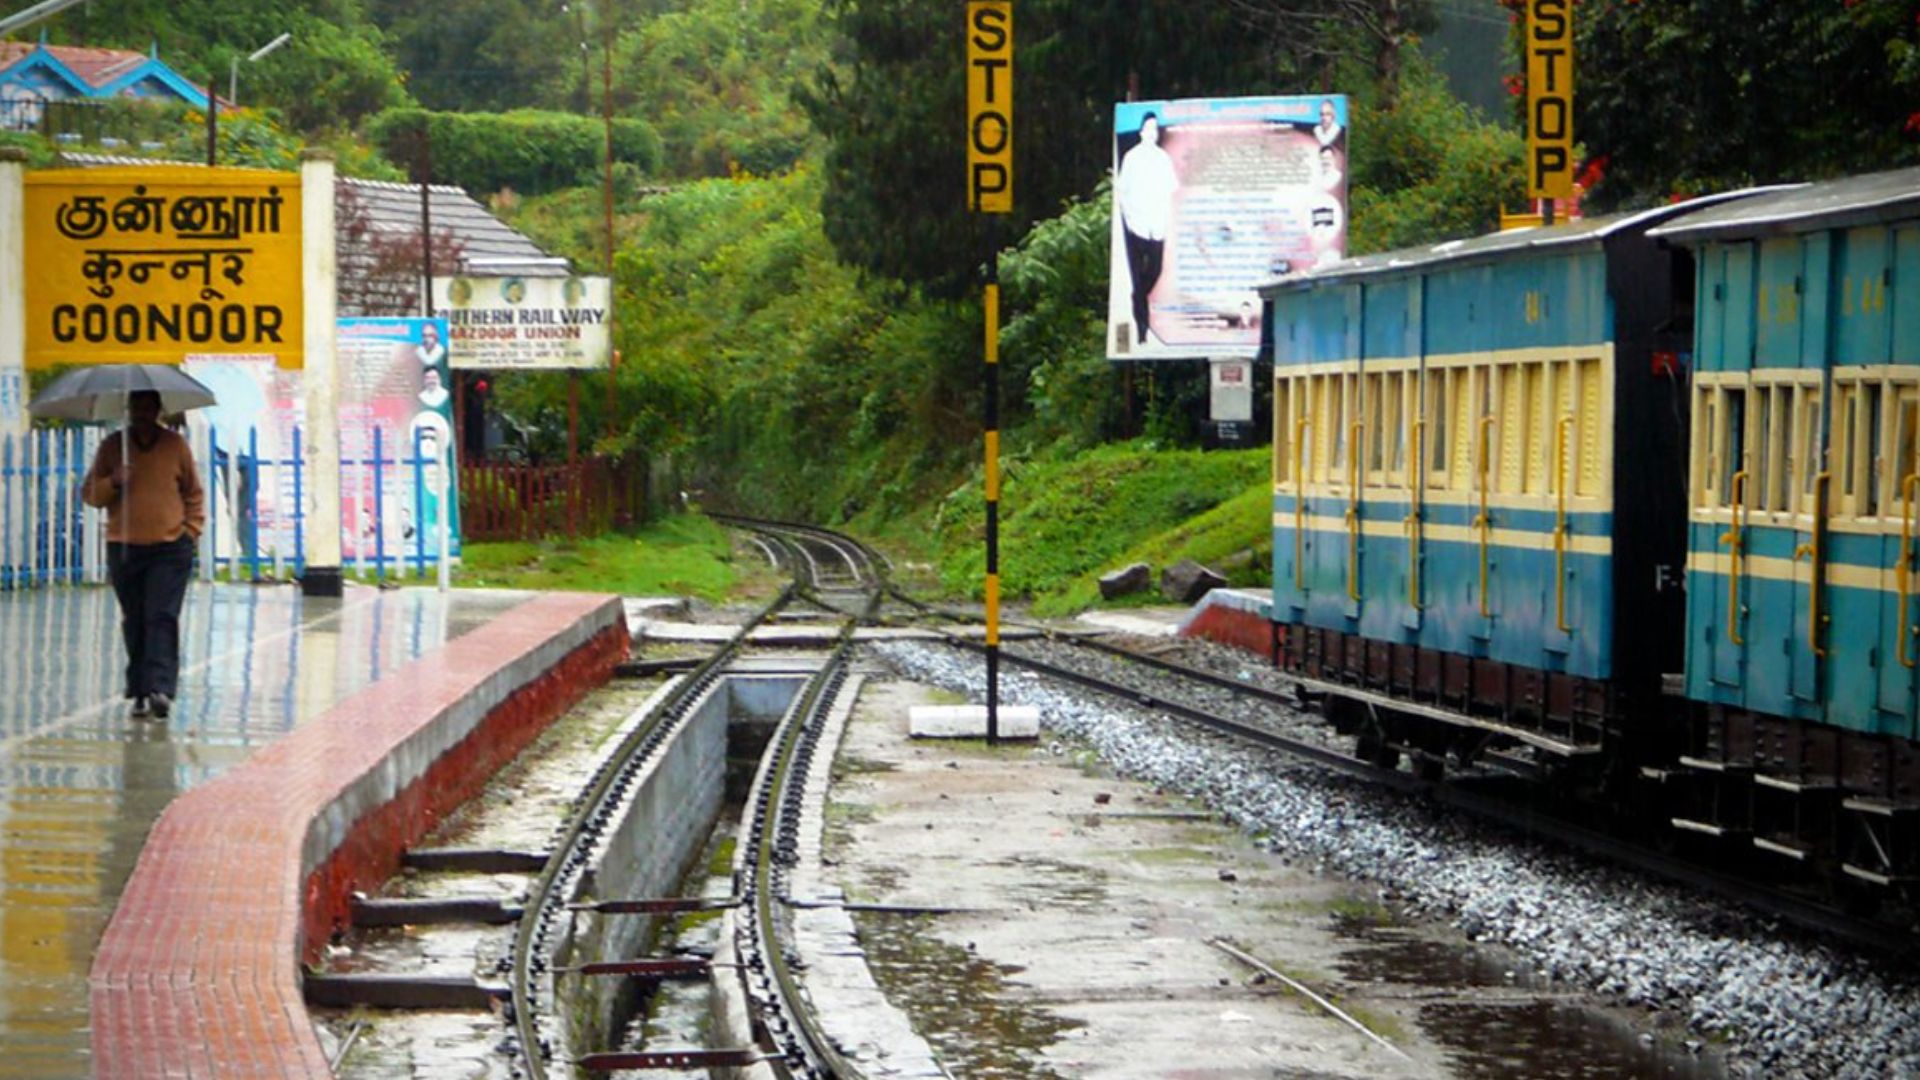 nilgiri-mountain-railway-coonoor